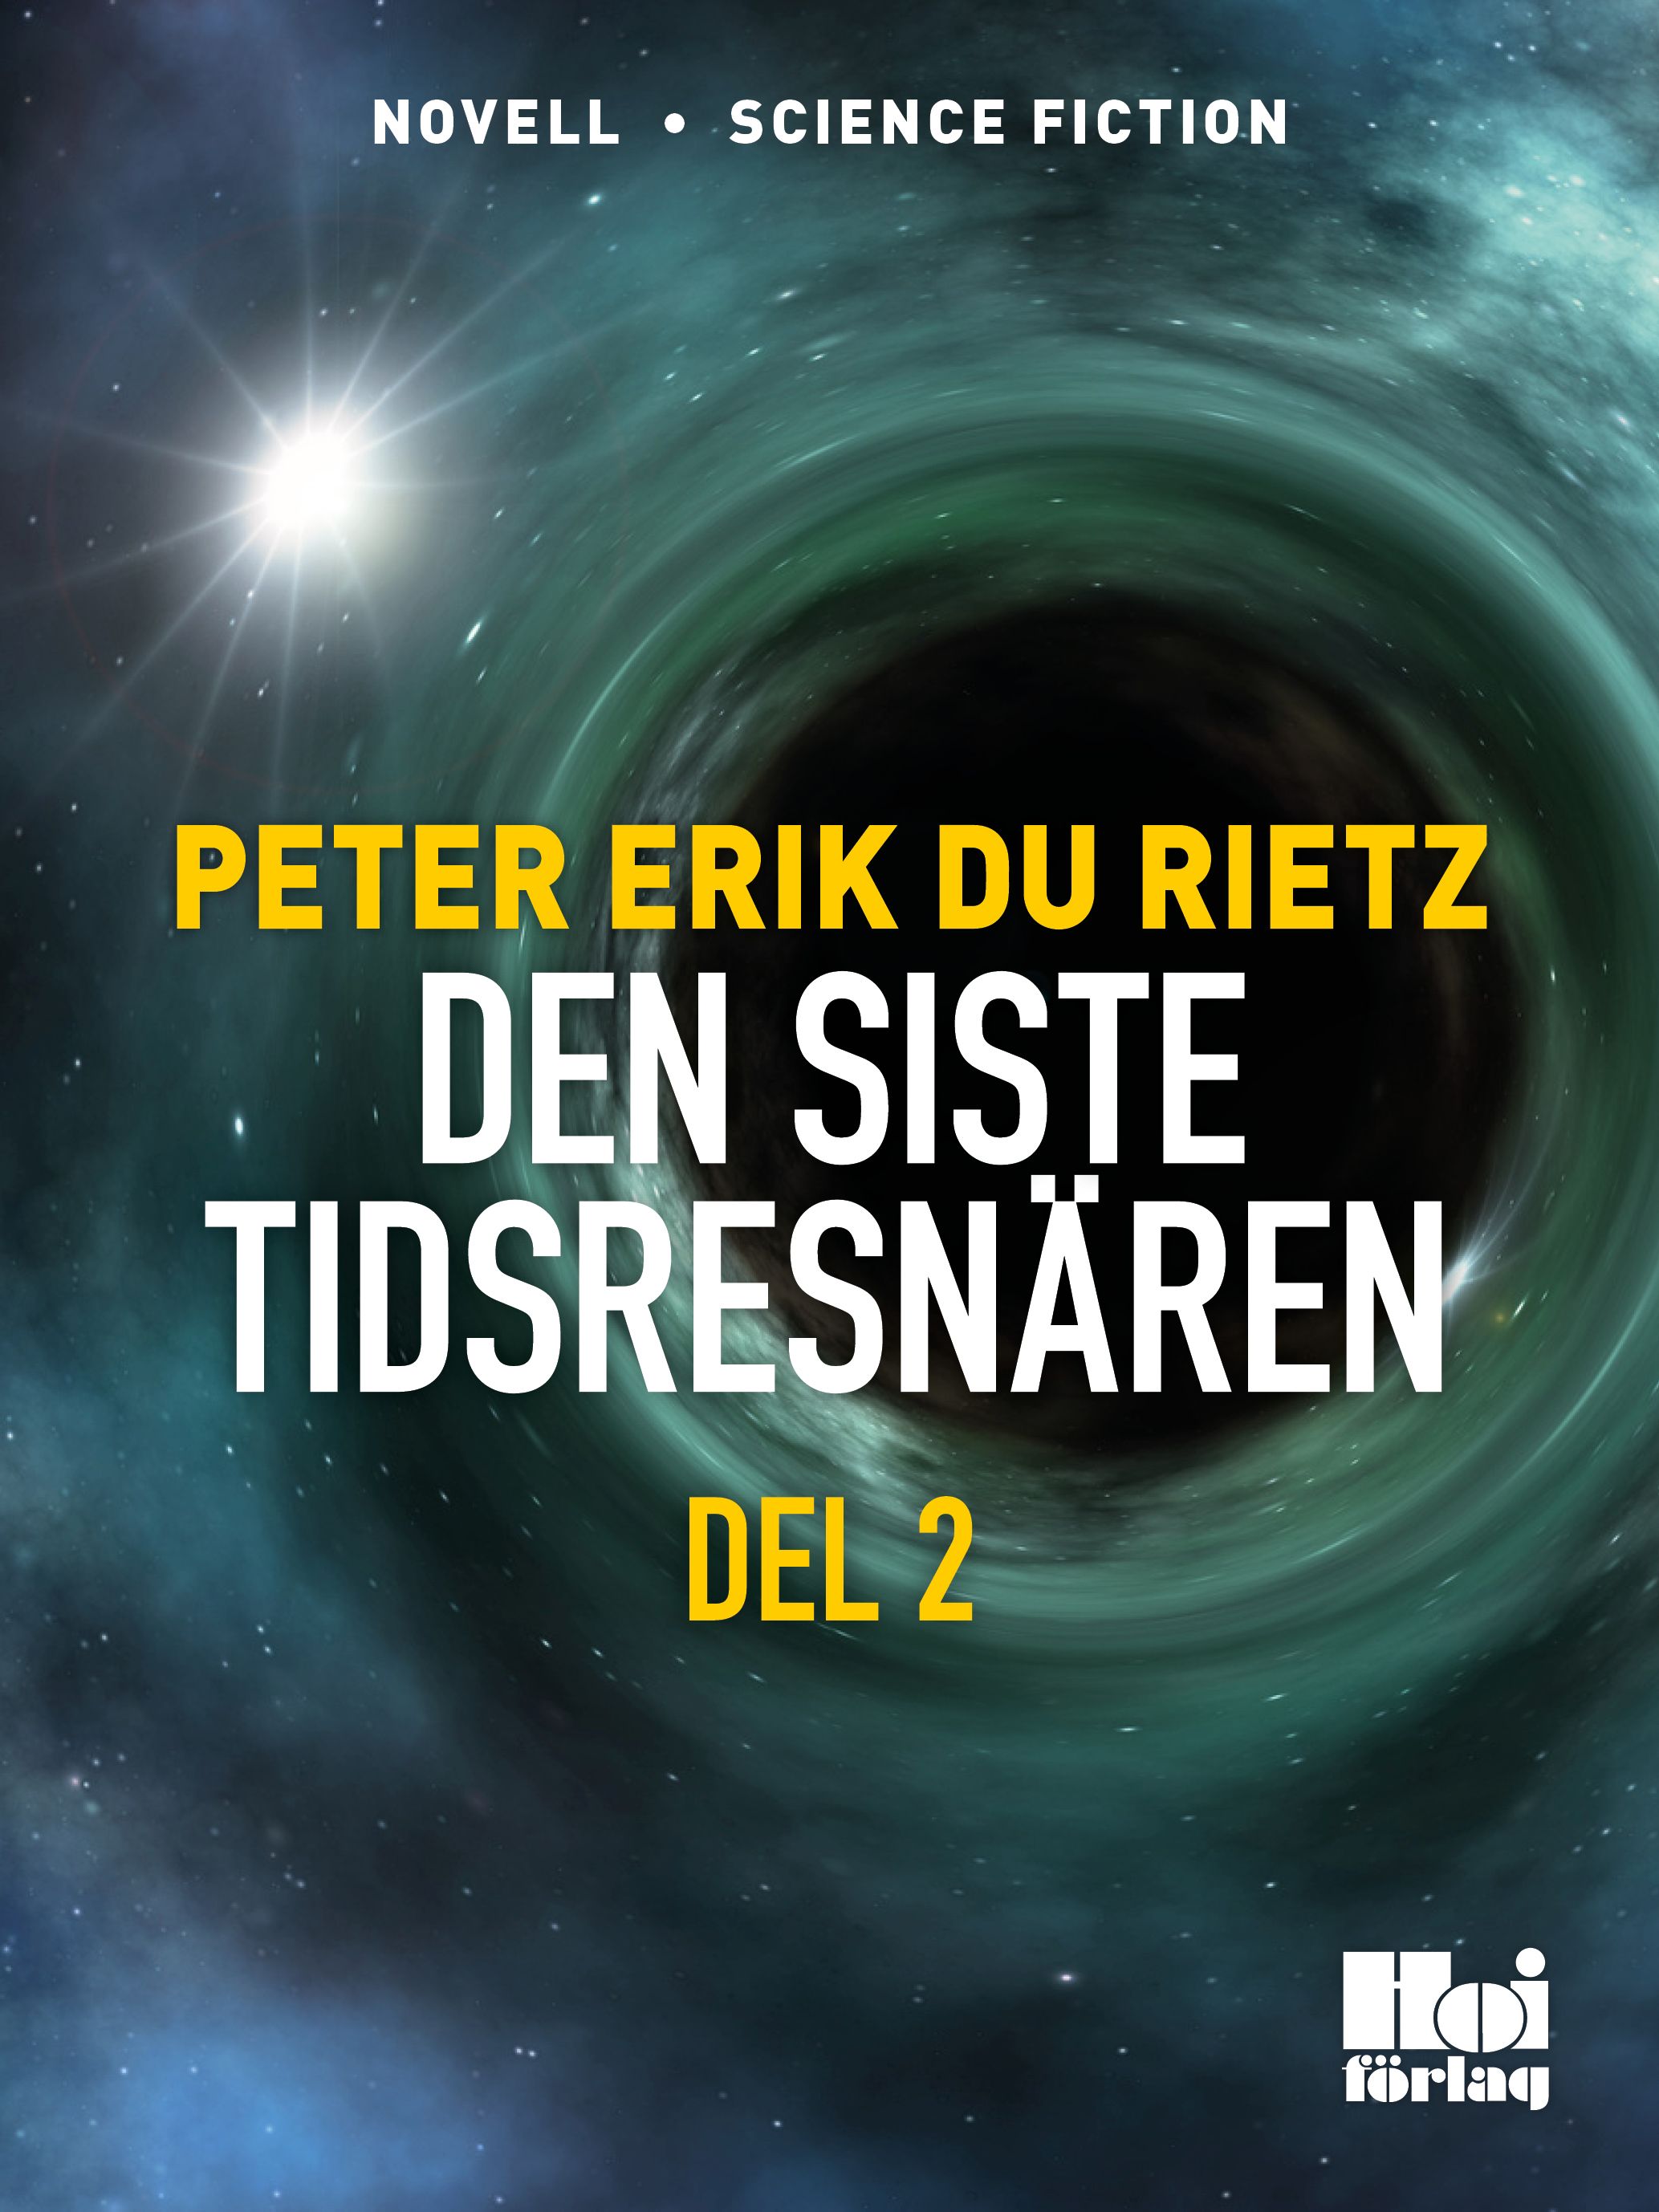 Den siste tidsresenären del 2, e-bog af Peter Erik Du Rietz